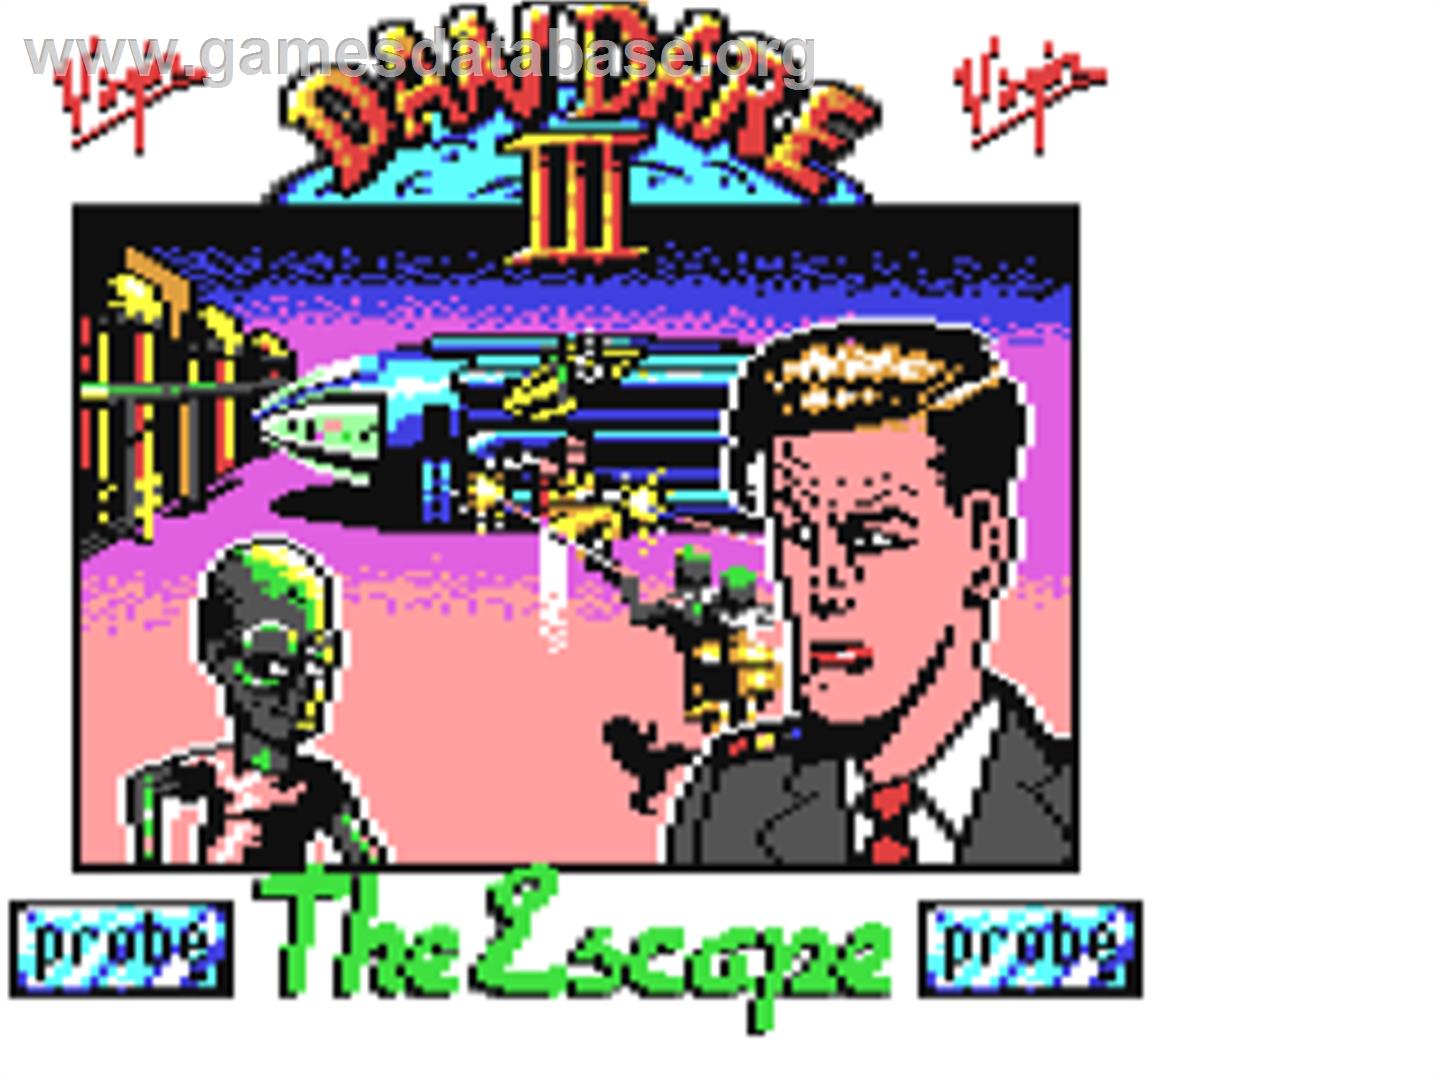 Dan Dare III: The Escape - Commodore 64 - Artwork - Title Screen